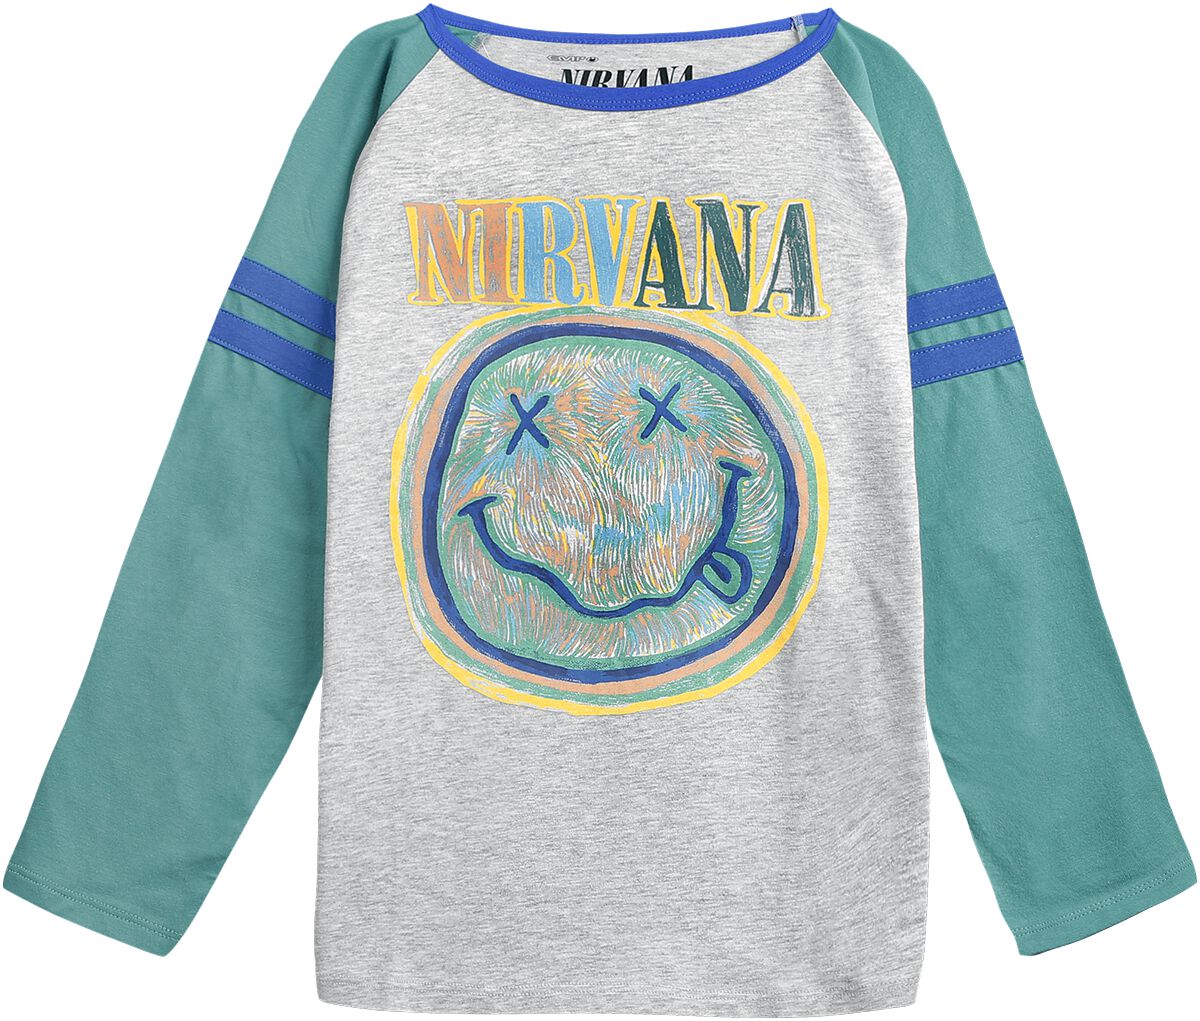 Nirvana Langarmshirt für Kleinkinder - Kids - EMP Signature Collection - für Mädchen & Jungen - grau/türkis  - EMP exklusives Merchandise!